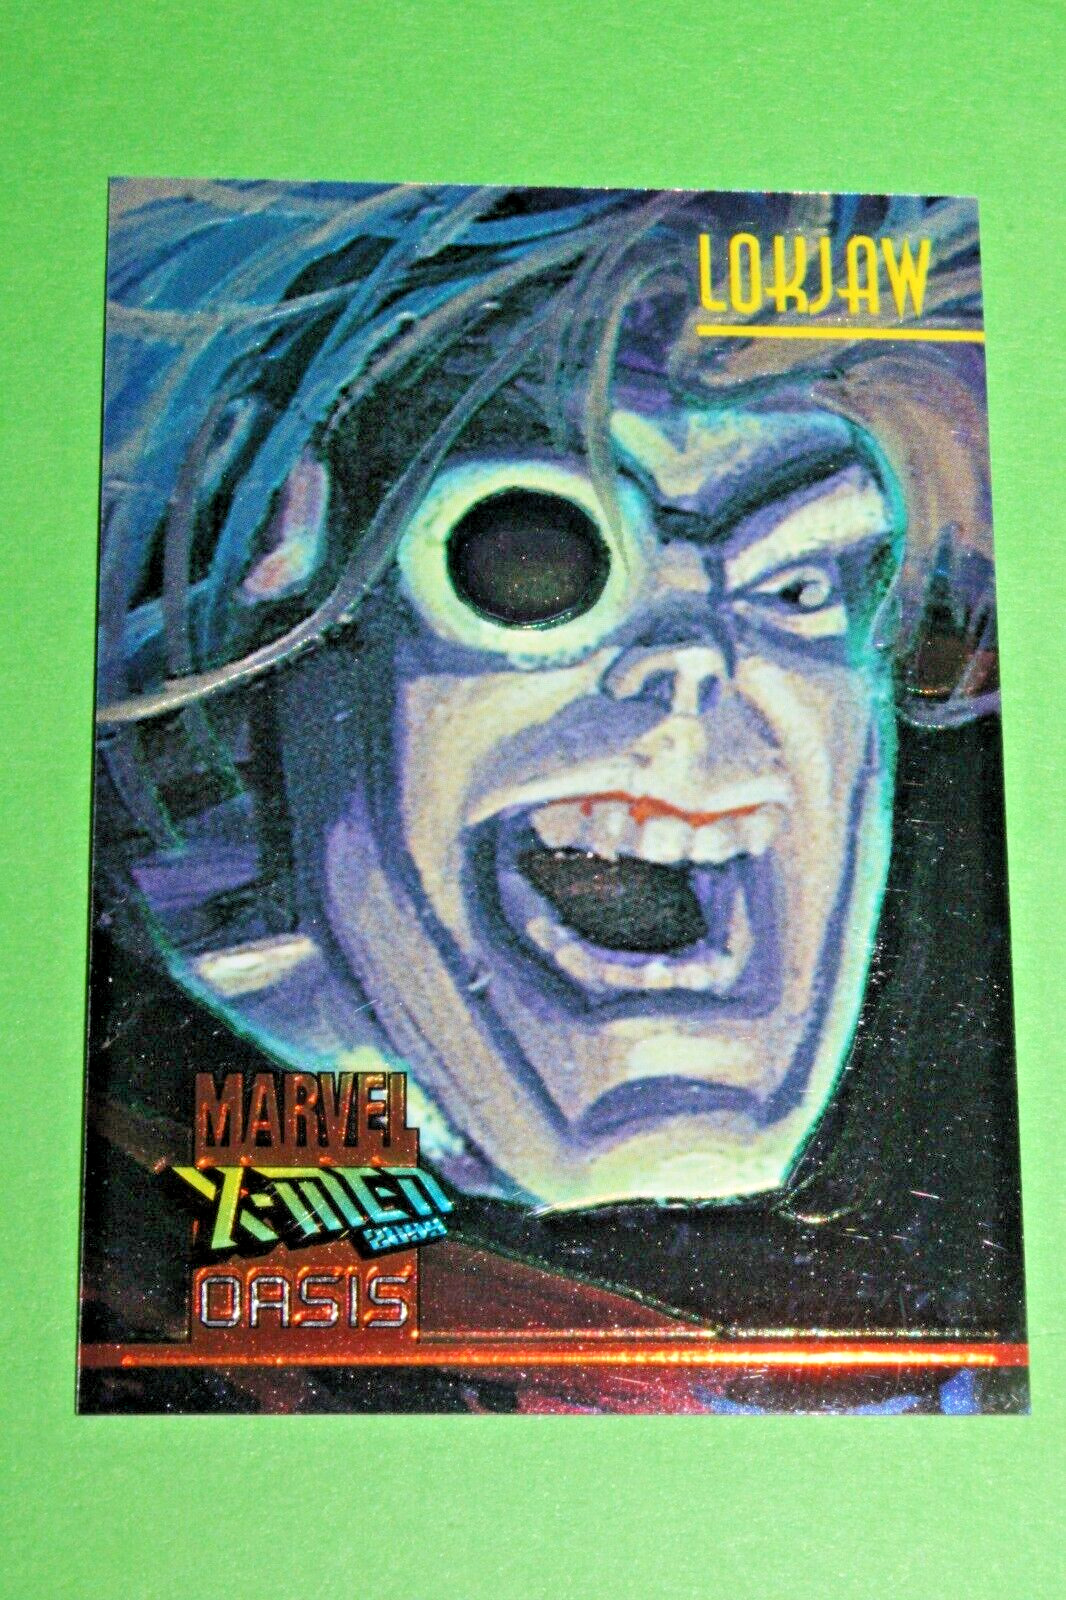 1997 MARVEL X-MEN 2099 OASIS CHROMIUM #1 INSERT CARD LOKJAW MARVEL HILDEBRANDT